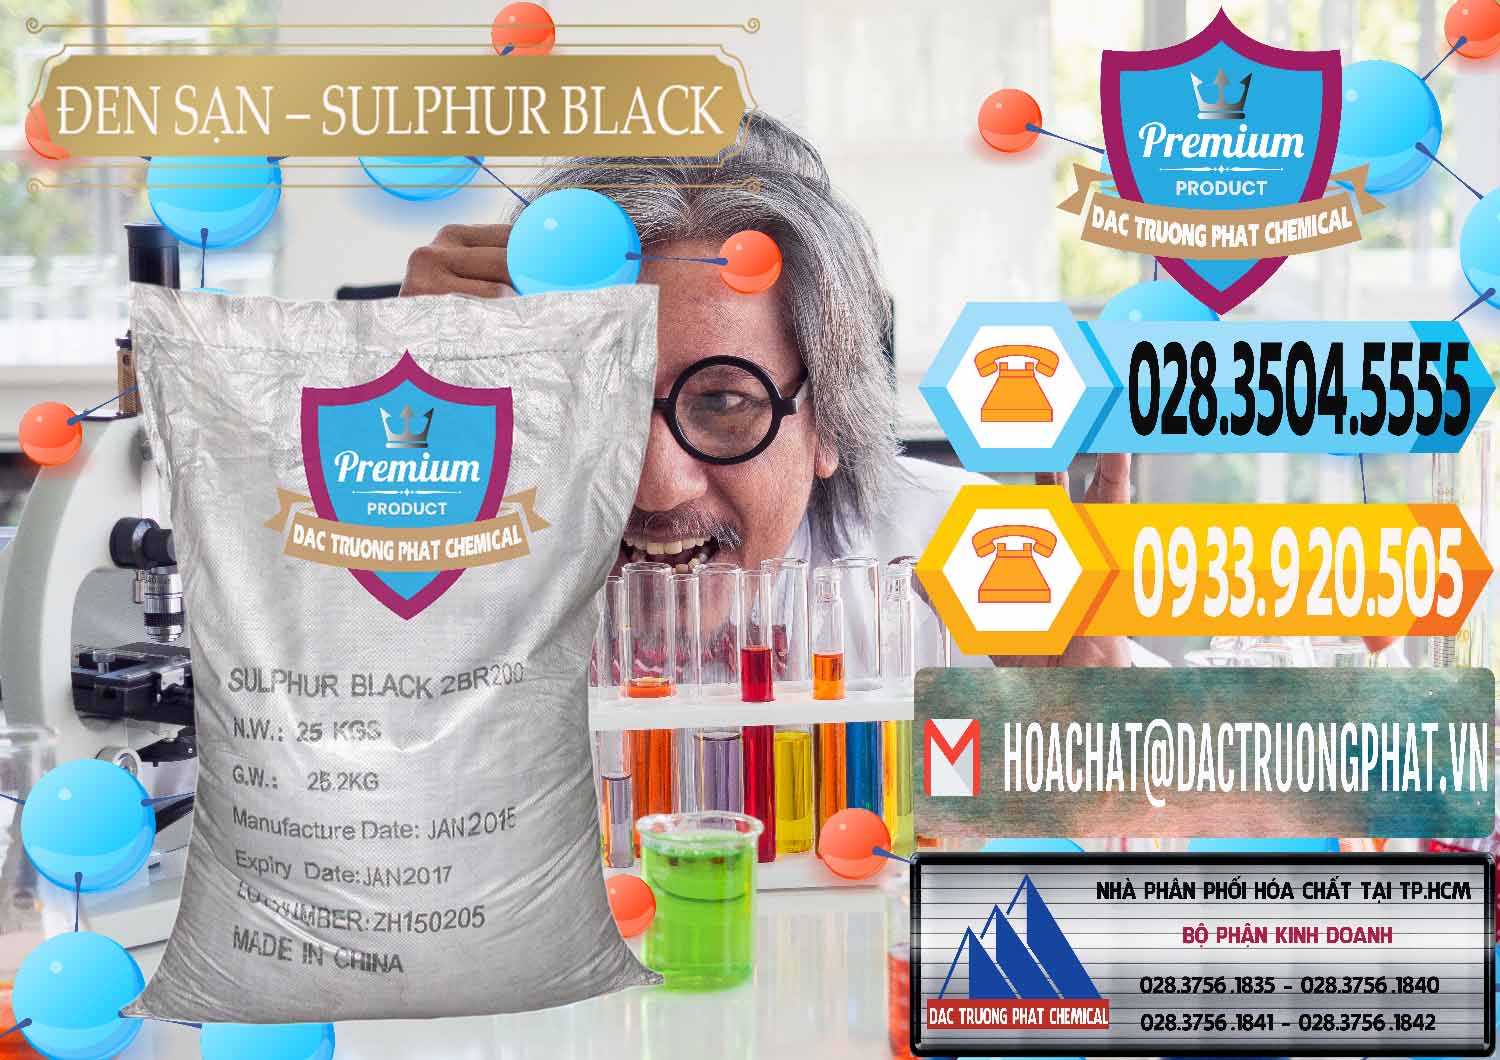 Nơi bán & phân phối Đen Sạn – Sulphur Black Trung Quốc China - 0062 - Công ty bán và phân phối hóa chất tại TP.HCM - hoachattayrua.net